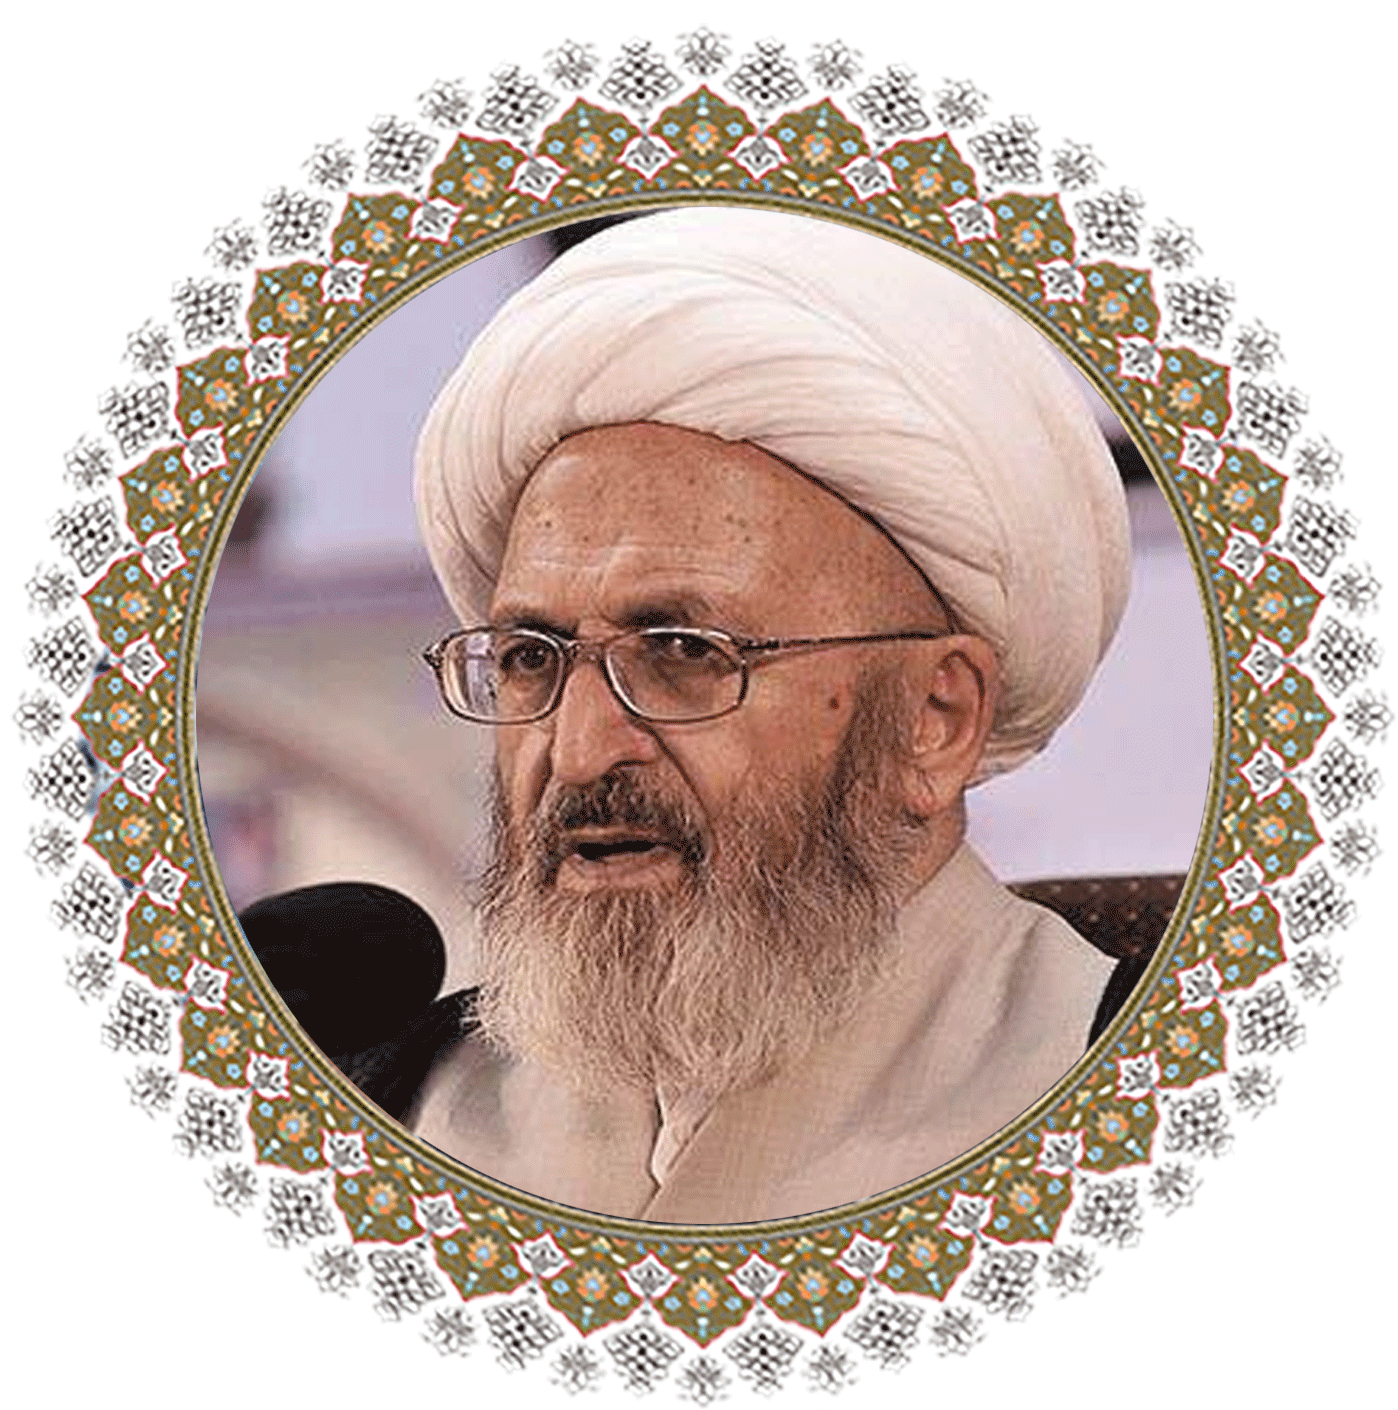 Grand Ayatollah Jafar Sobhani